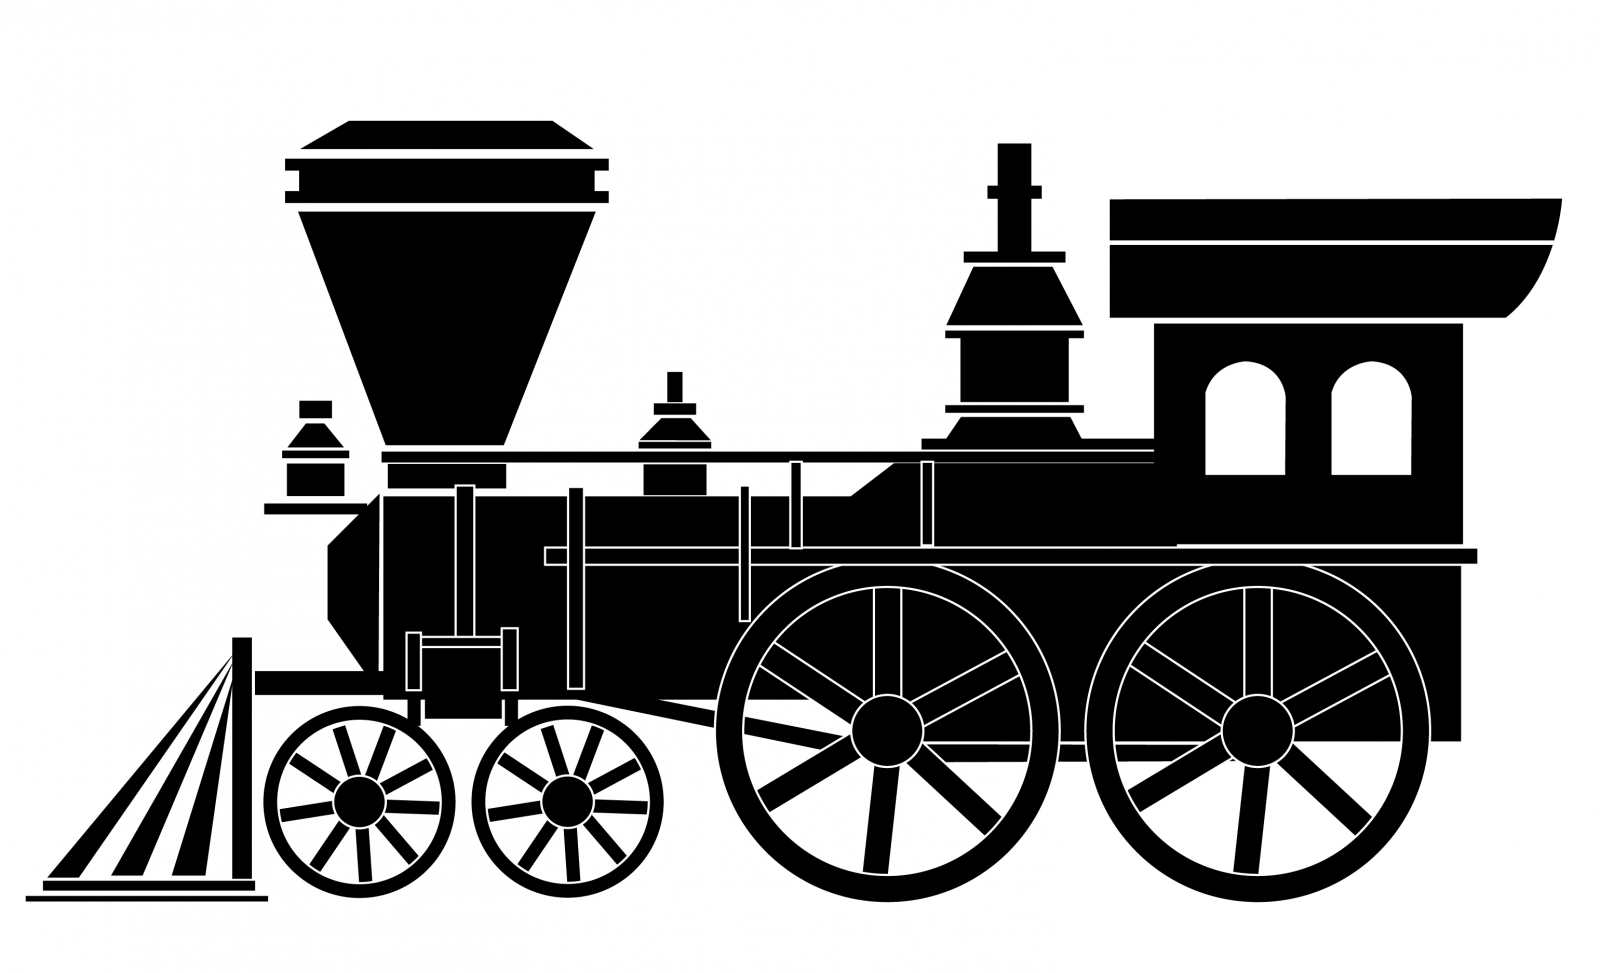 Steam train cliparts.